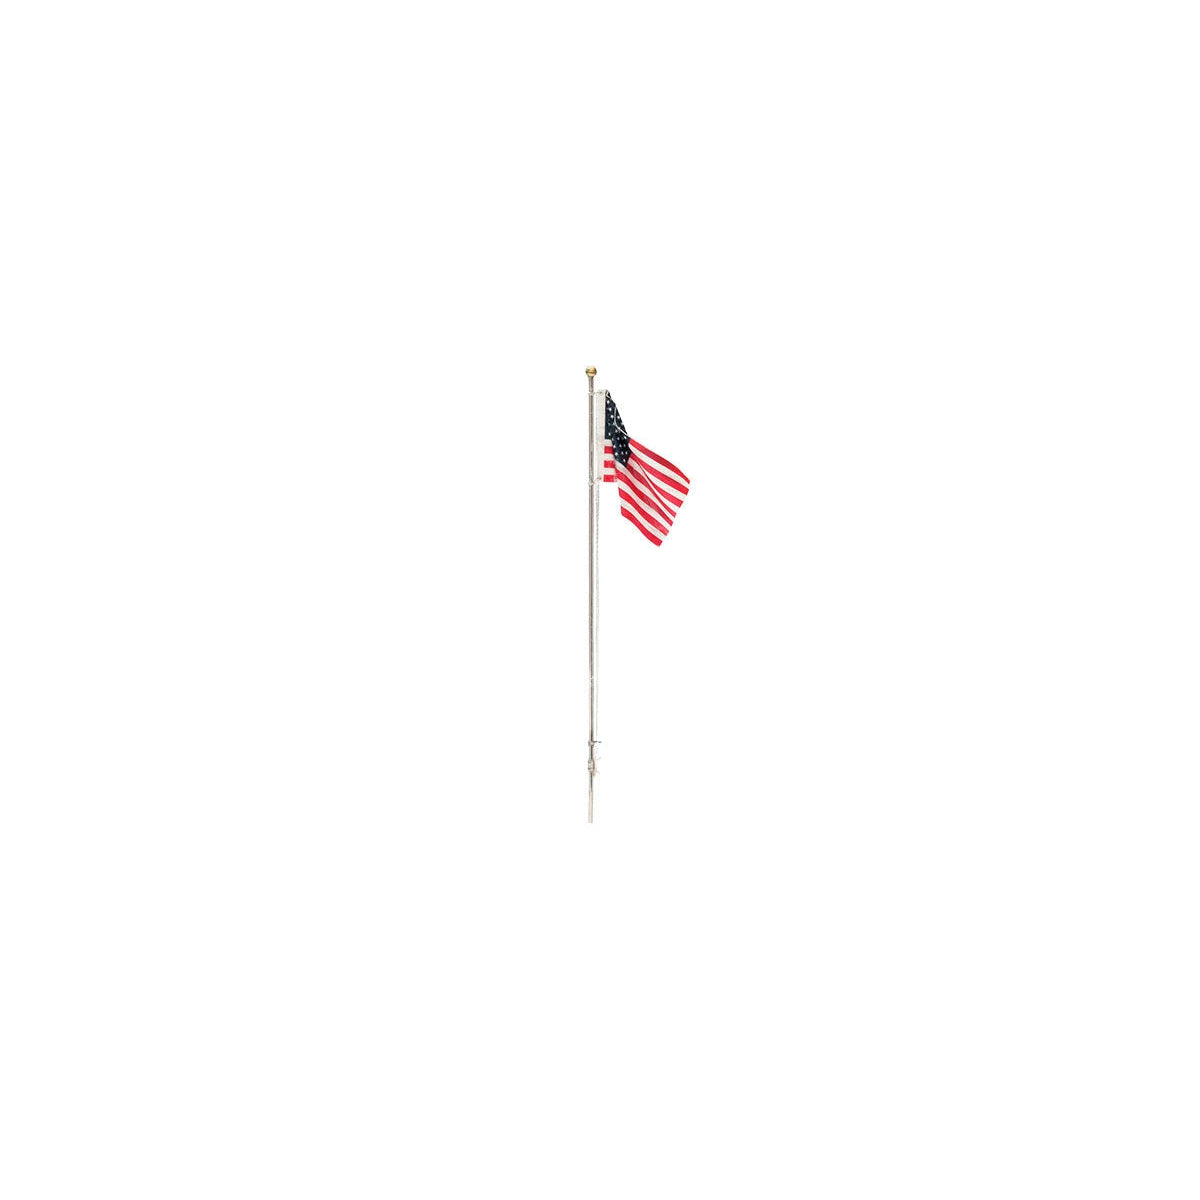 Woodland Scenics Medium US Flag – Pole